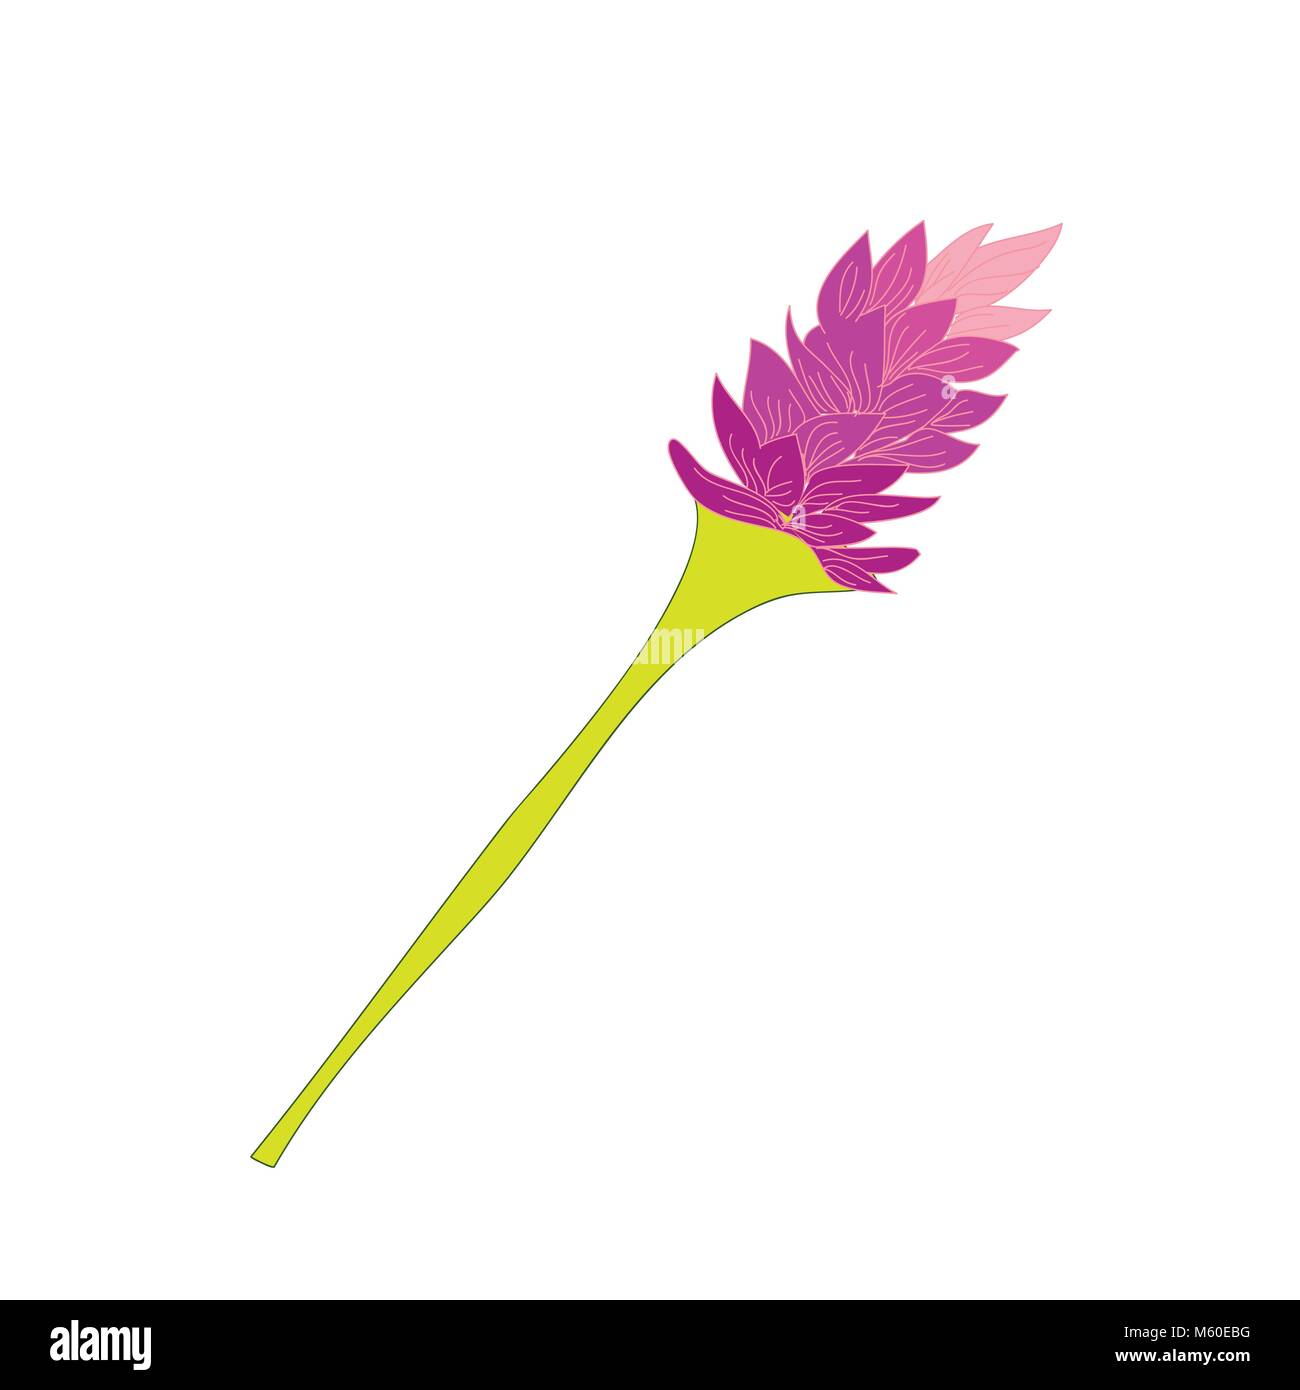 Rosa Lavendel tropische Blume Hand gezeichnet Abbildung Stock Vektor